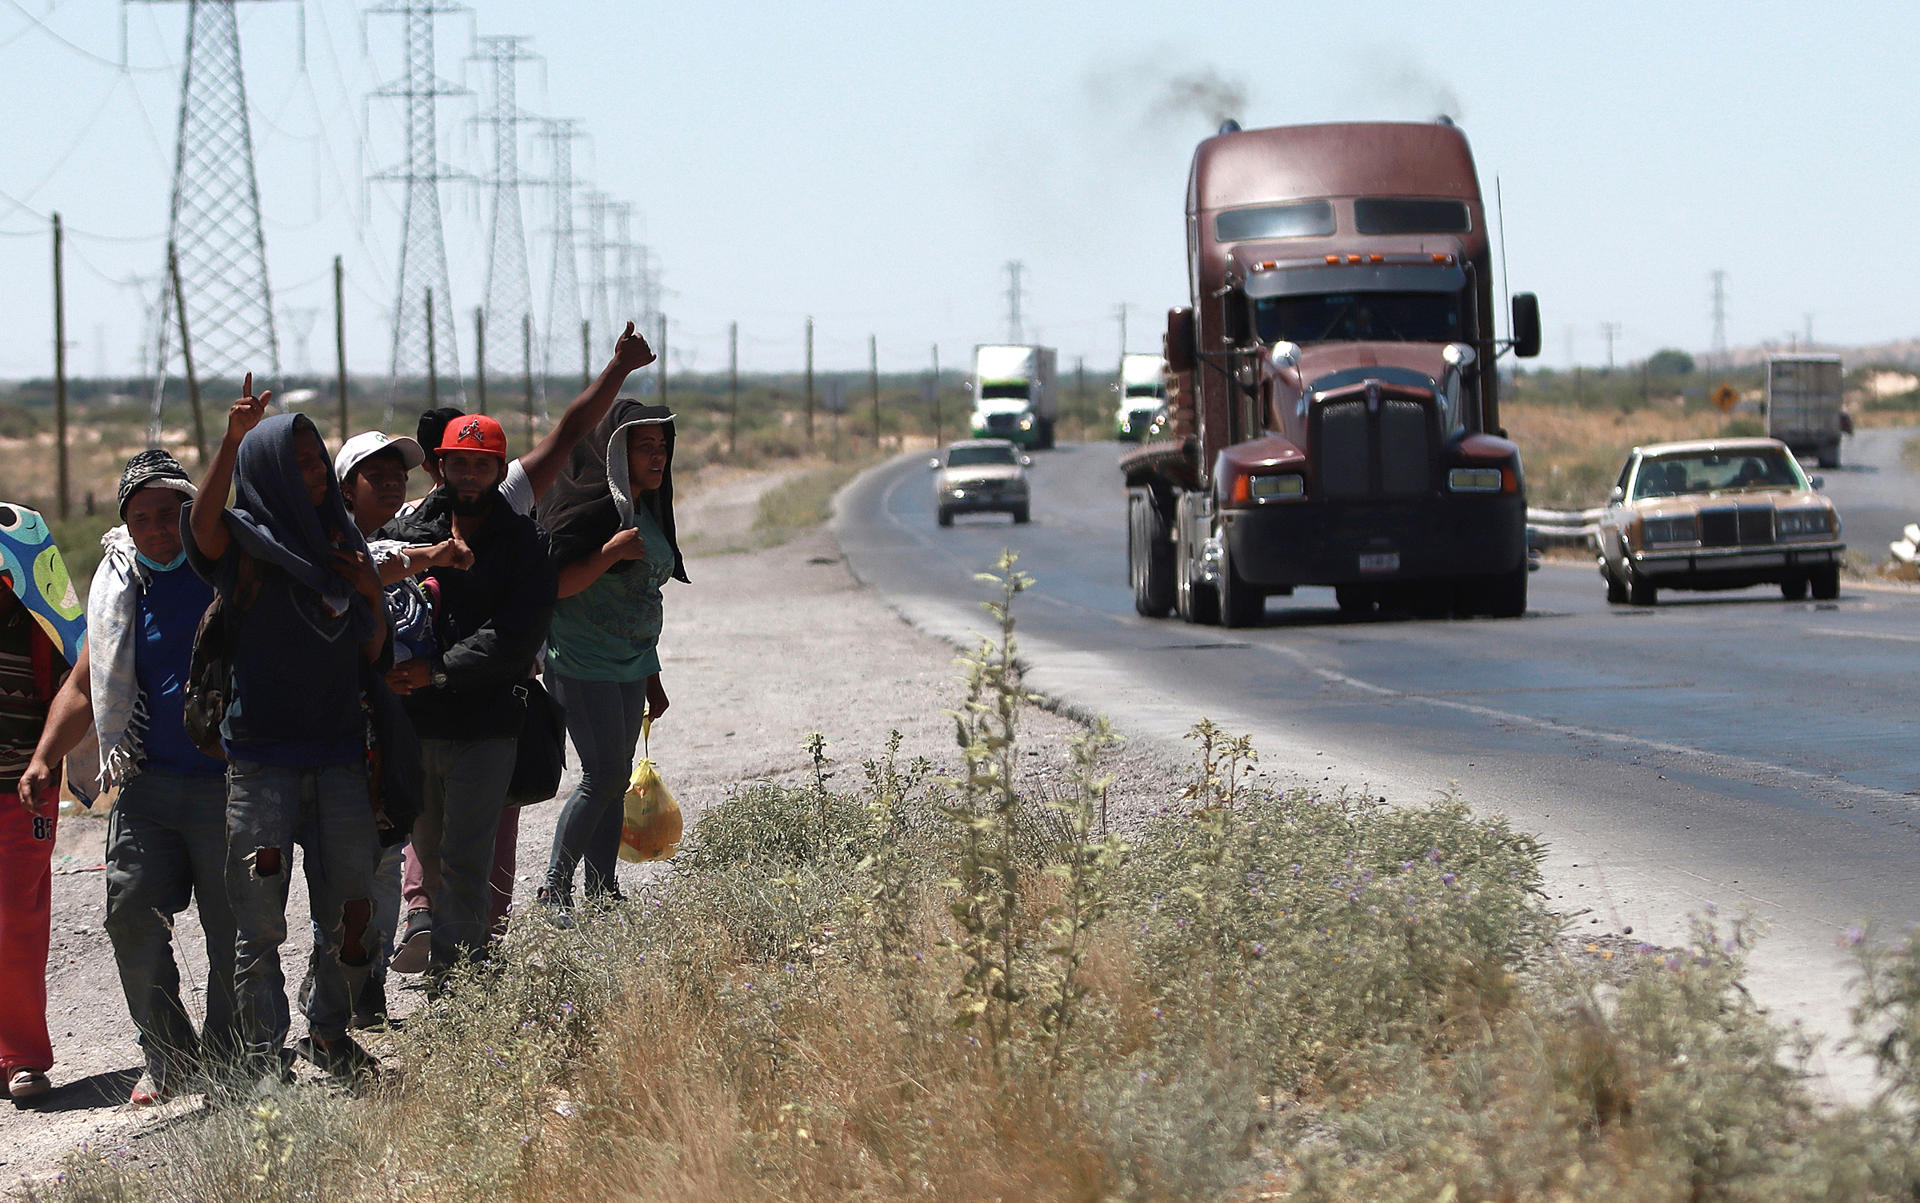 TRAVESÍA. Un grupo de migrantes camina a un costado de la carretera rumbo a la frontera con Estados Unidos, en la ciudad de Chihuahua (México). EFE